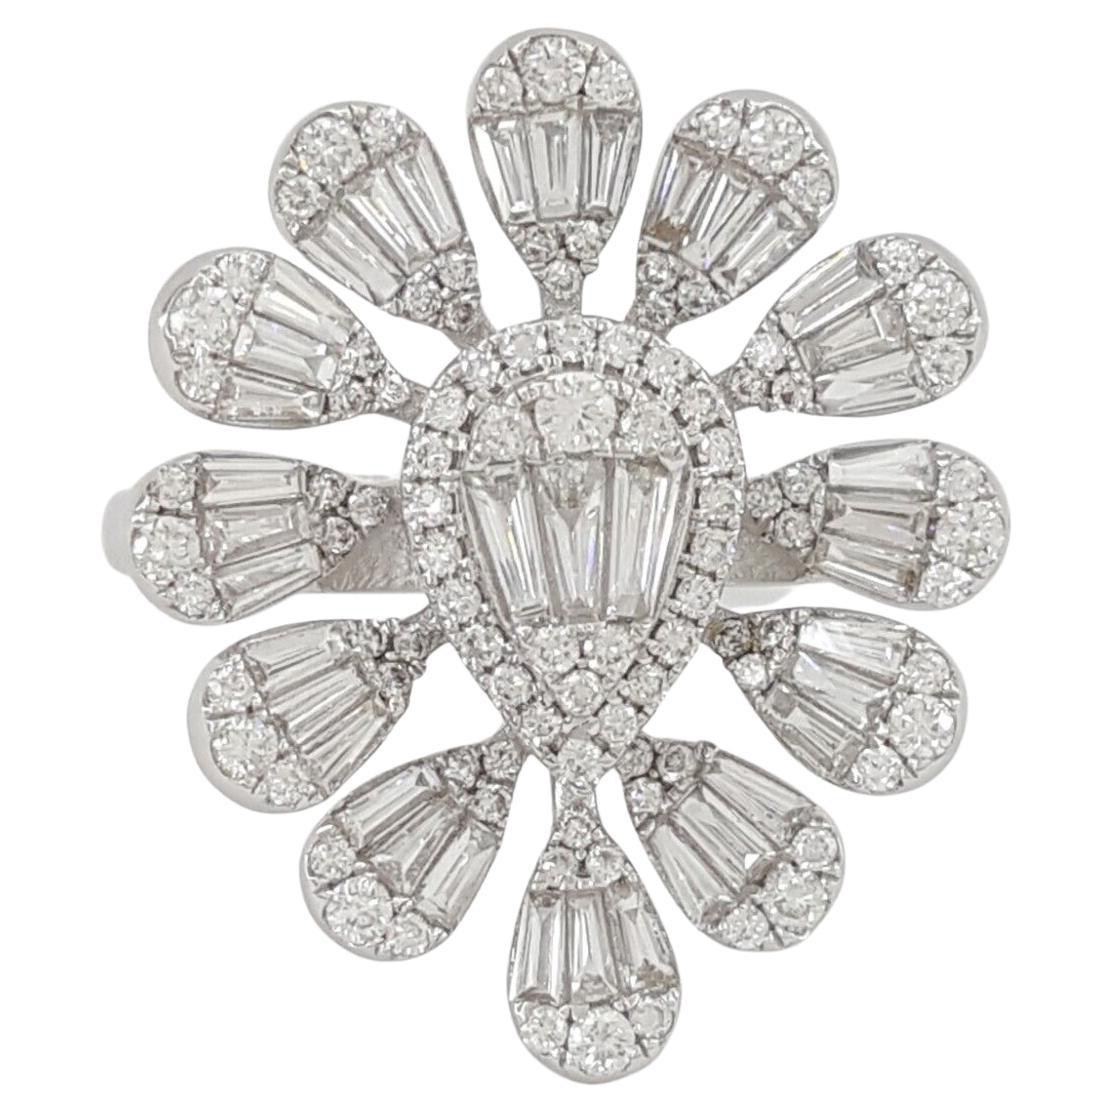 Round Brilliant & Baguette Cut Diamond Flower Cluster 18k White Gold Ring